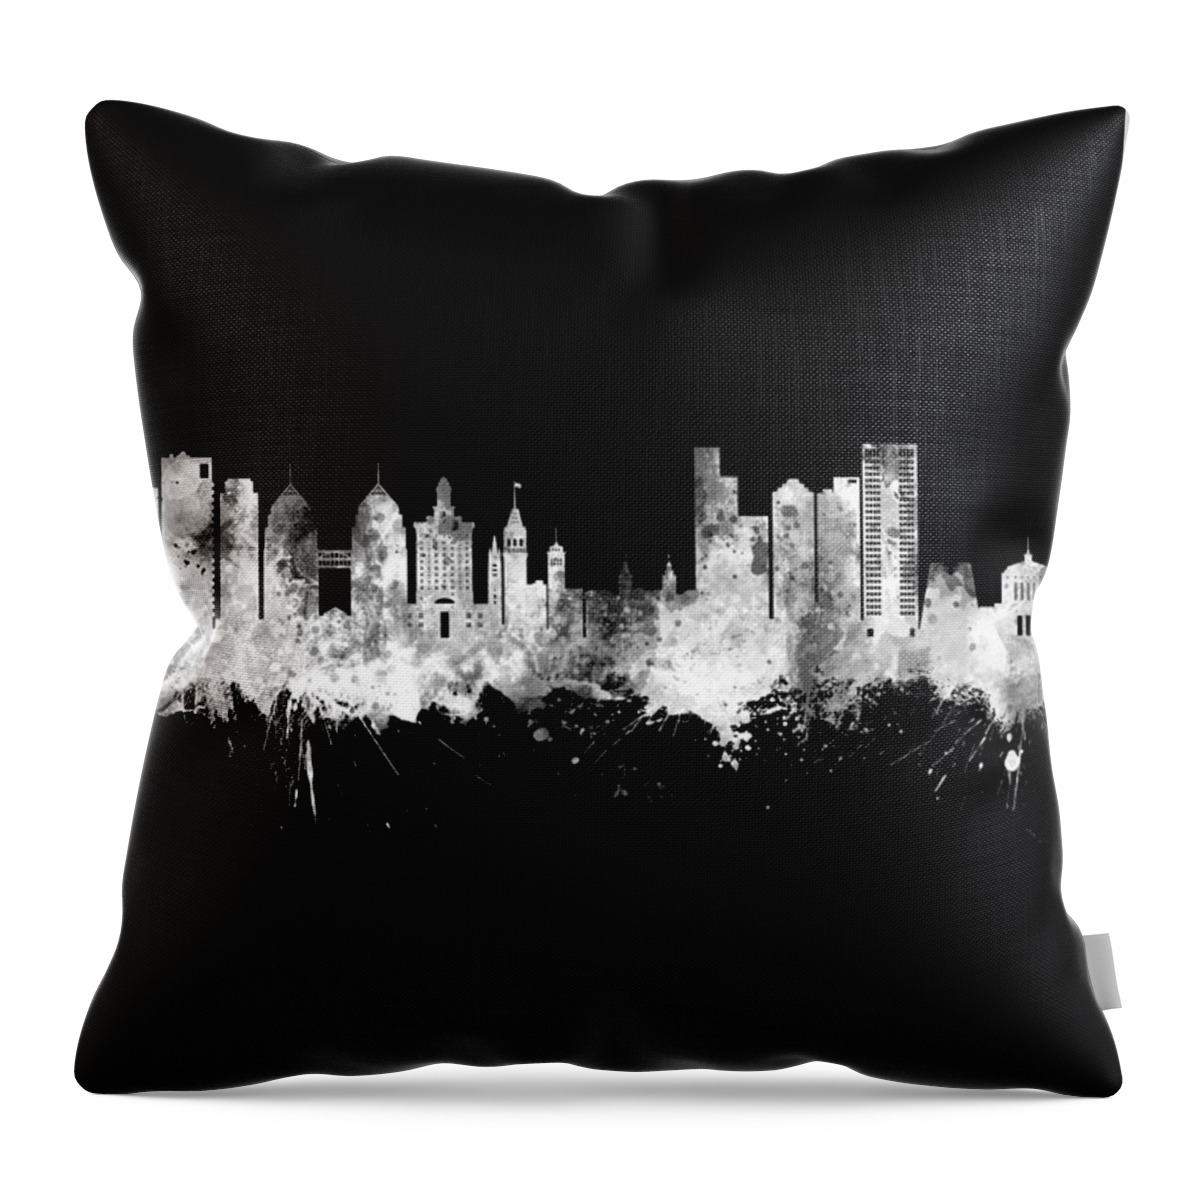 Oakland Throw Pillow featuring the digital art Oakland California Skyline #28 by Michael Tompsett